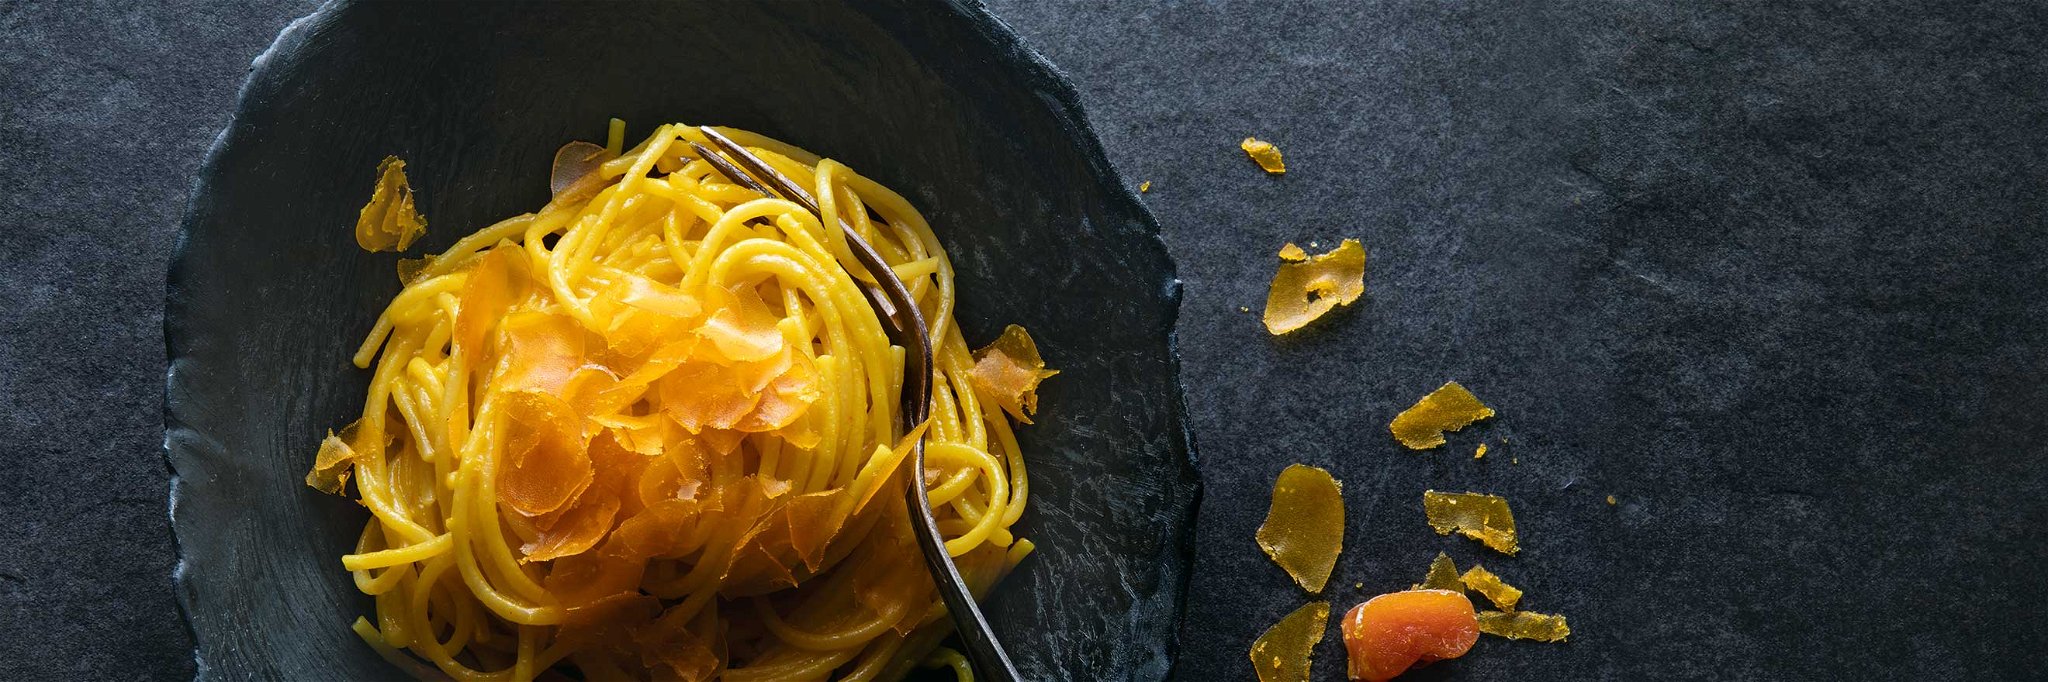 Pasta: Spaghetti alla Bottarga